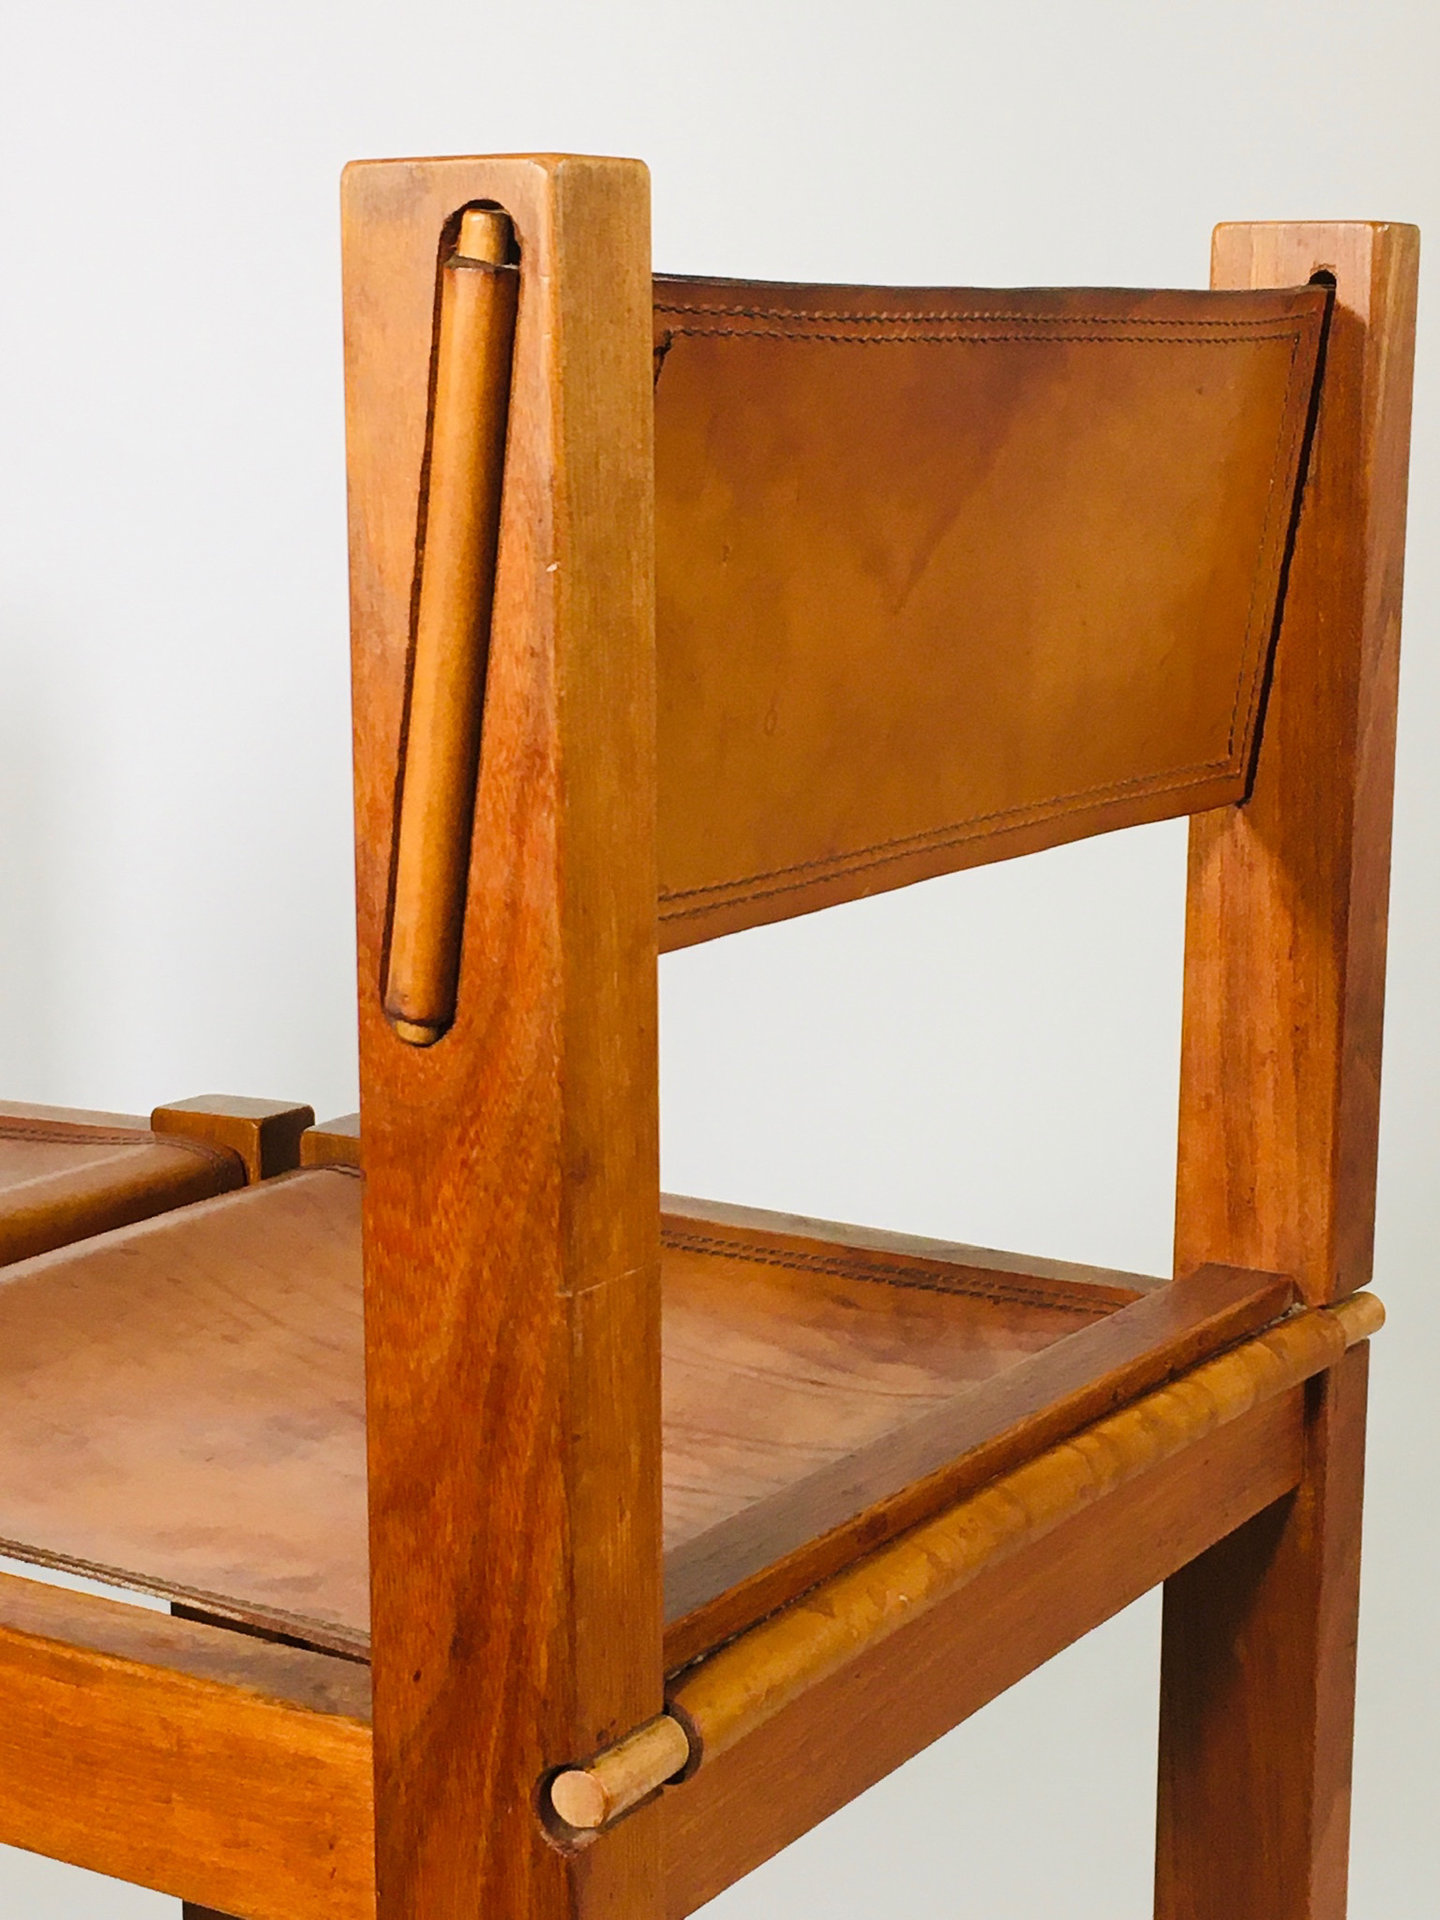 Suite de 4 chaises en cuir